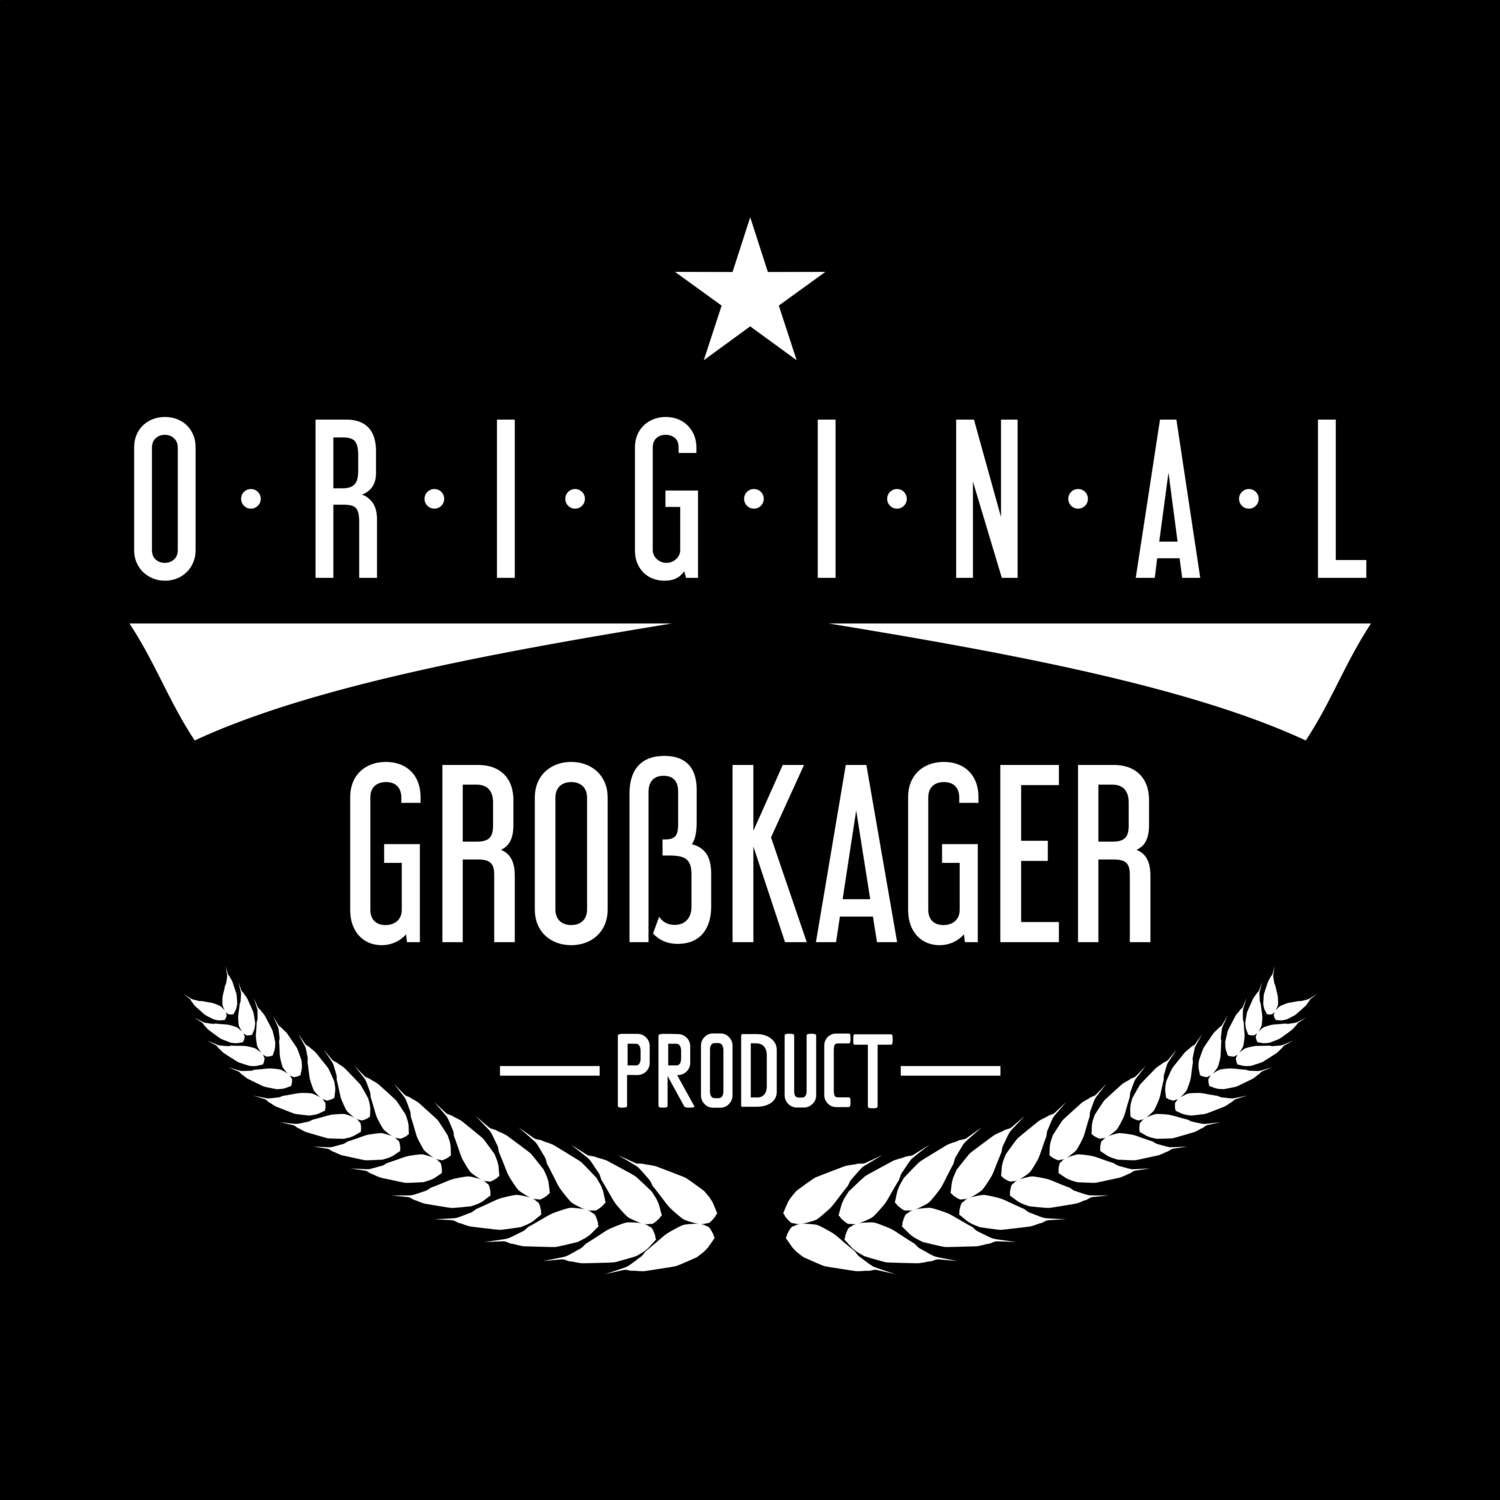 Großkager T-Shirt »Original Product«